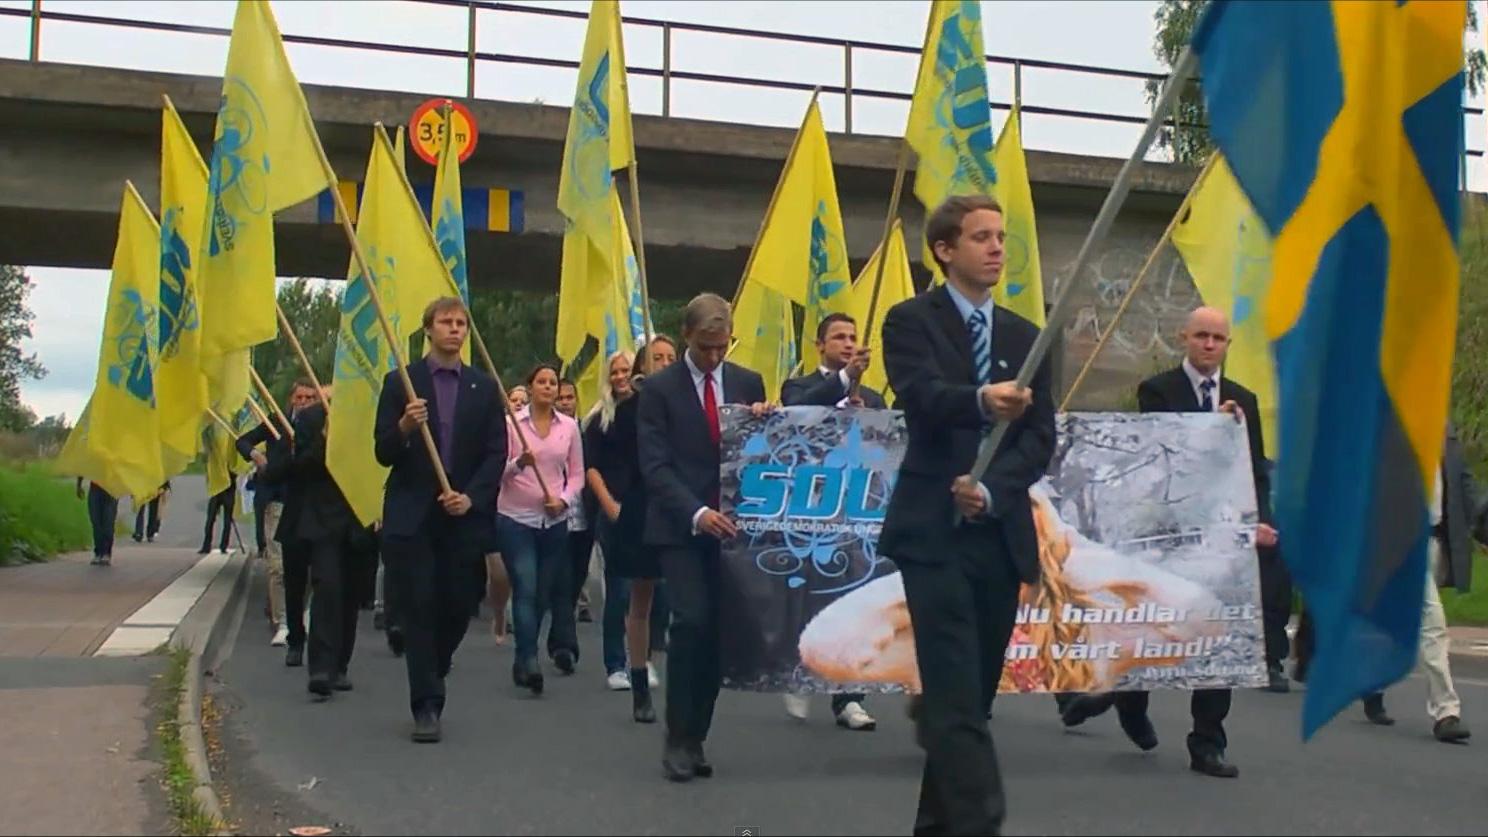 Här marscherar sverigedemokrater i samband med SDU-kongressen.